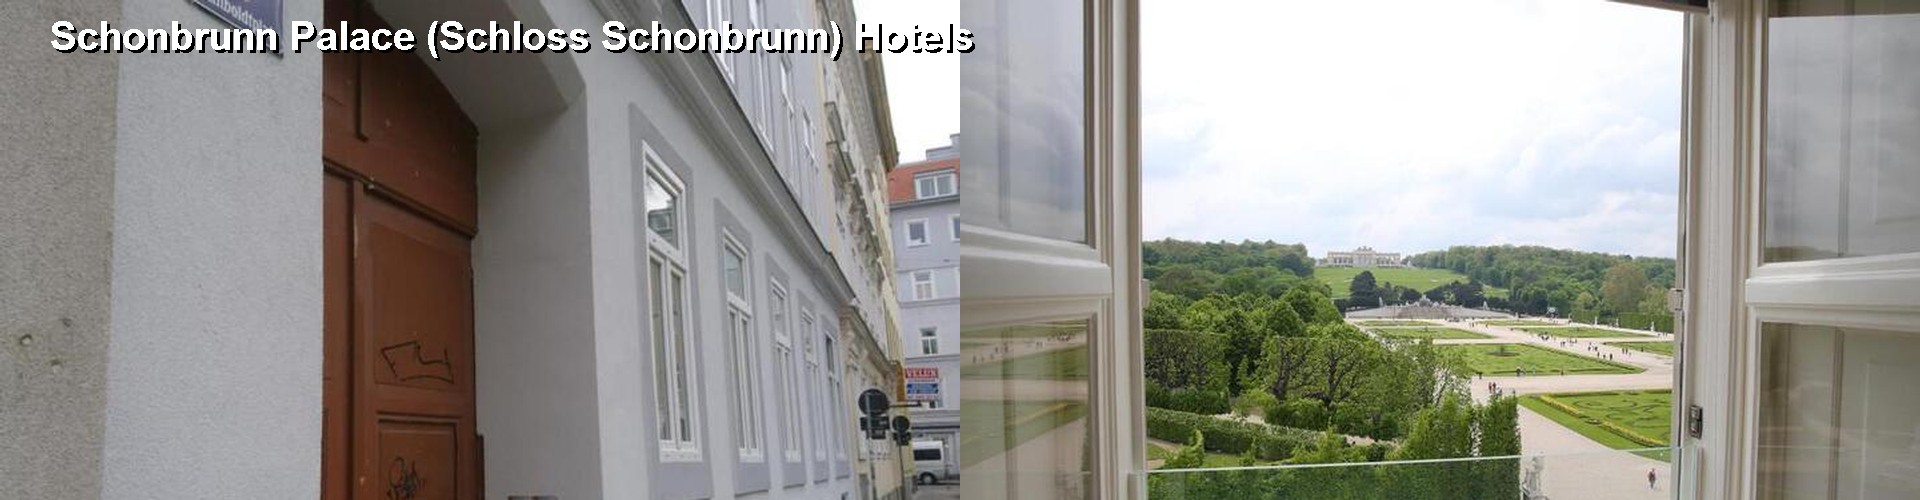 5 Best Hotels near Schonbrunn Palace (Schloss Schonbrunn)